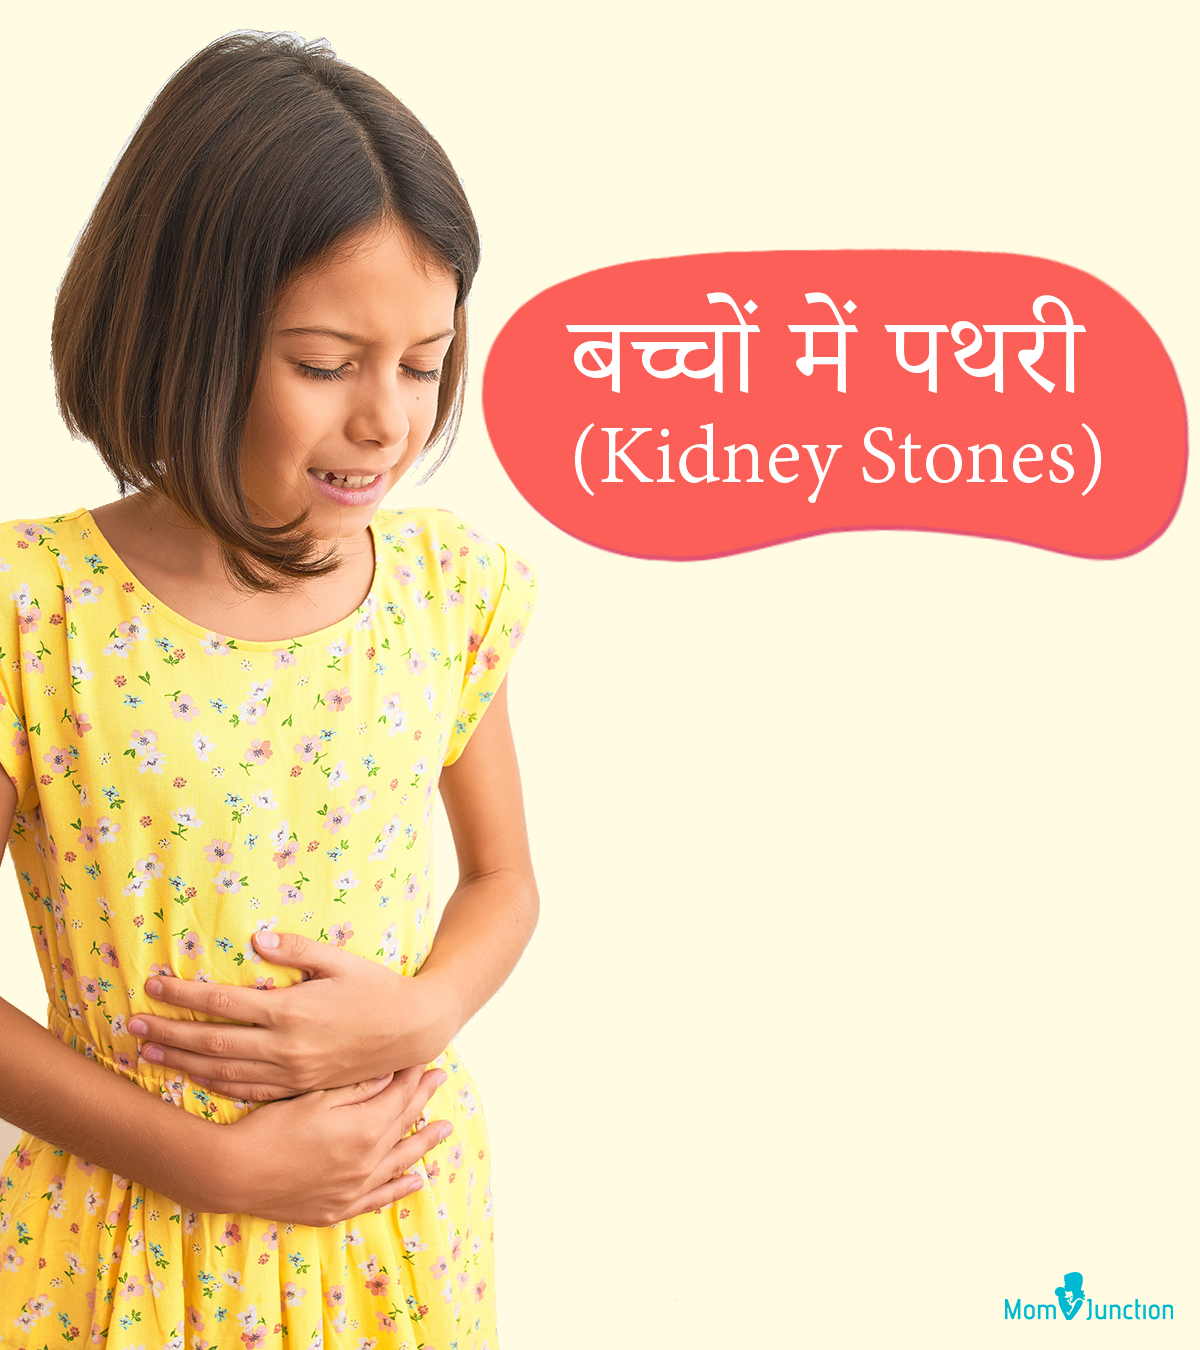 बच्चों में पथरी (किडनी स्टोन) के लक्षण, निदान और इलाज | Bacho Mein Kidney Stones Ka Ilaj